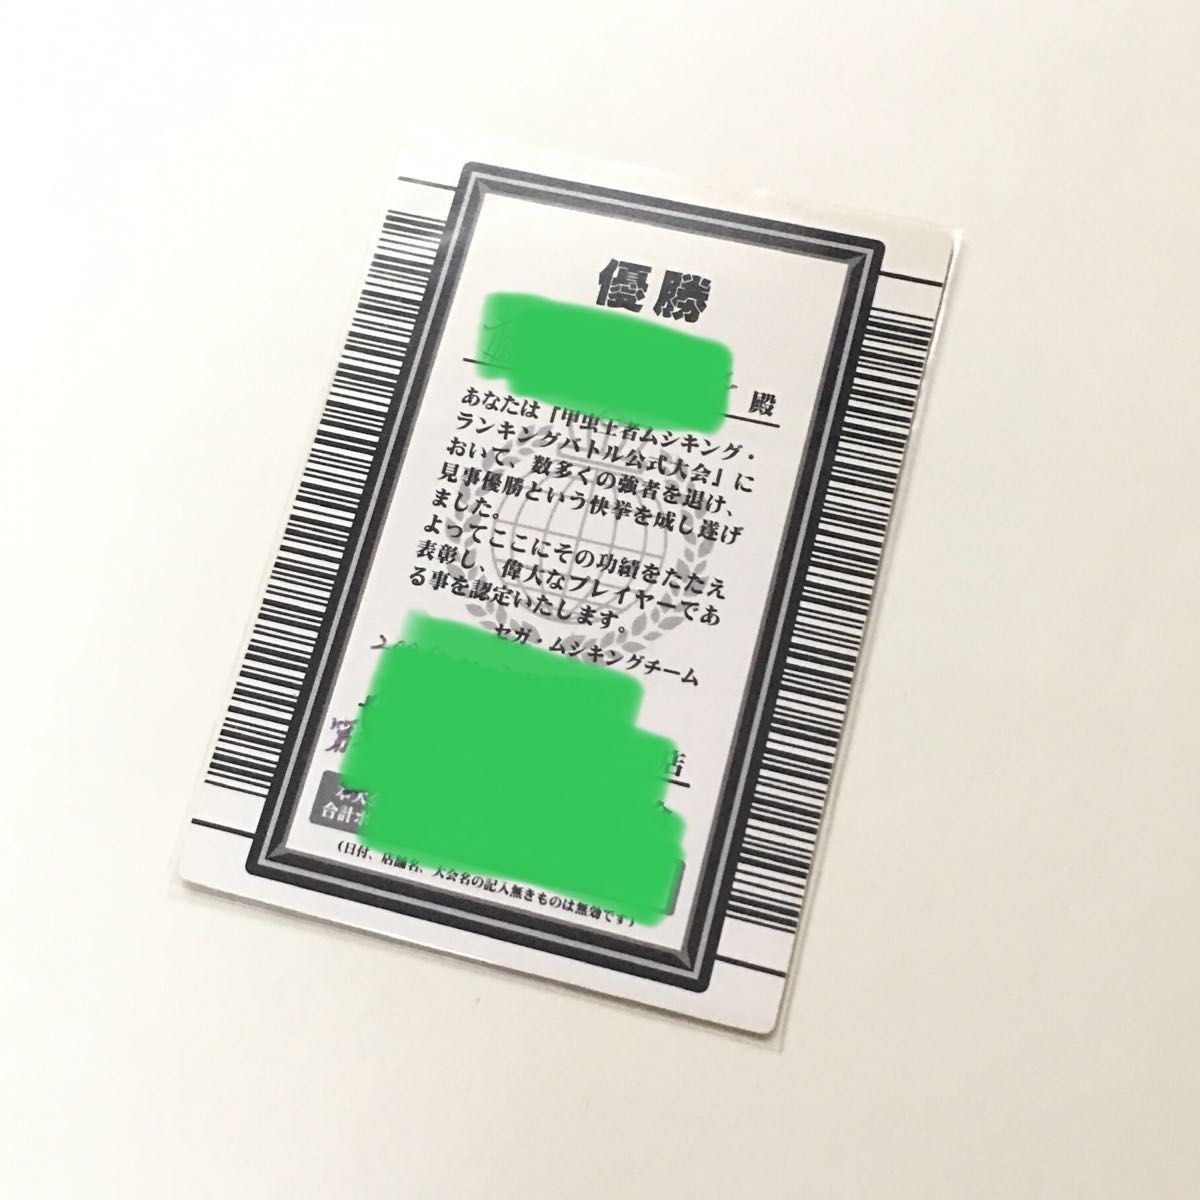 【希少】ムシキング ランキングバトル優勝カード グレイテストプレイヤー 認定証